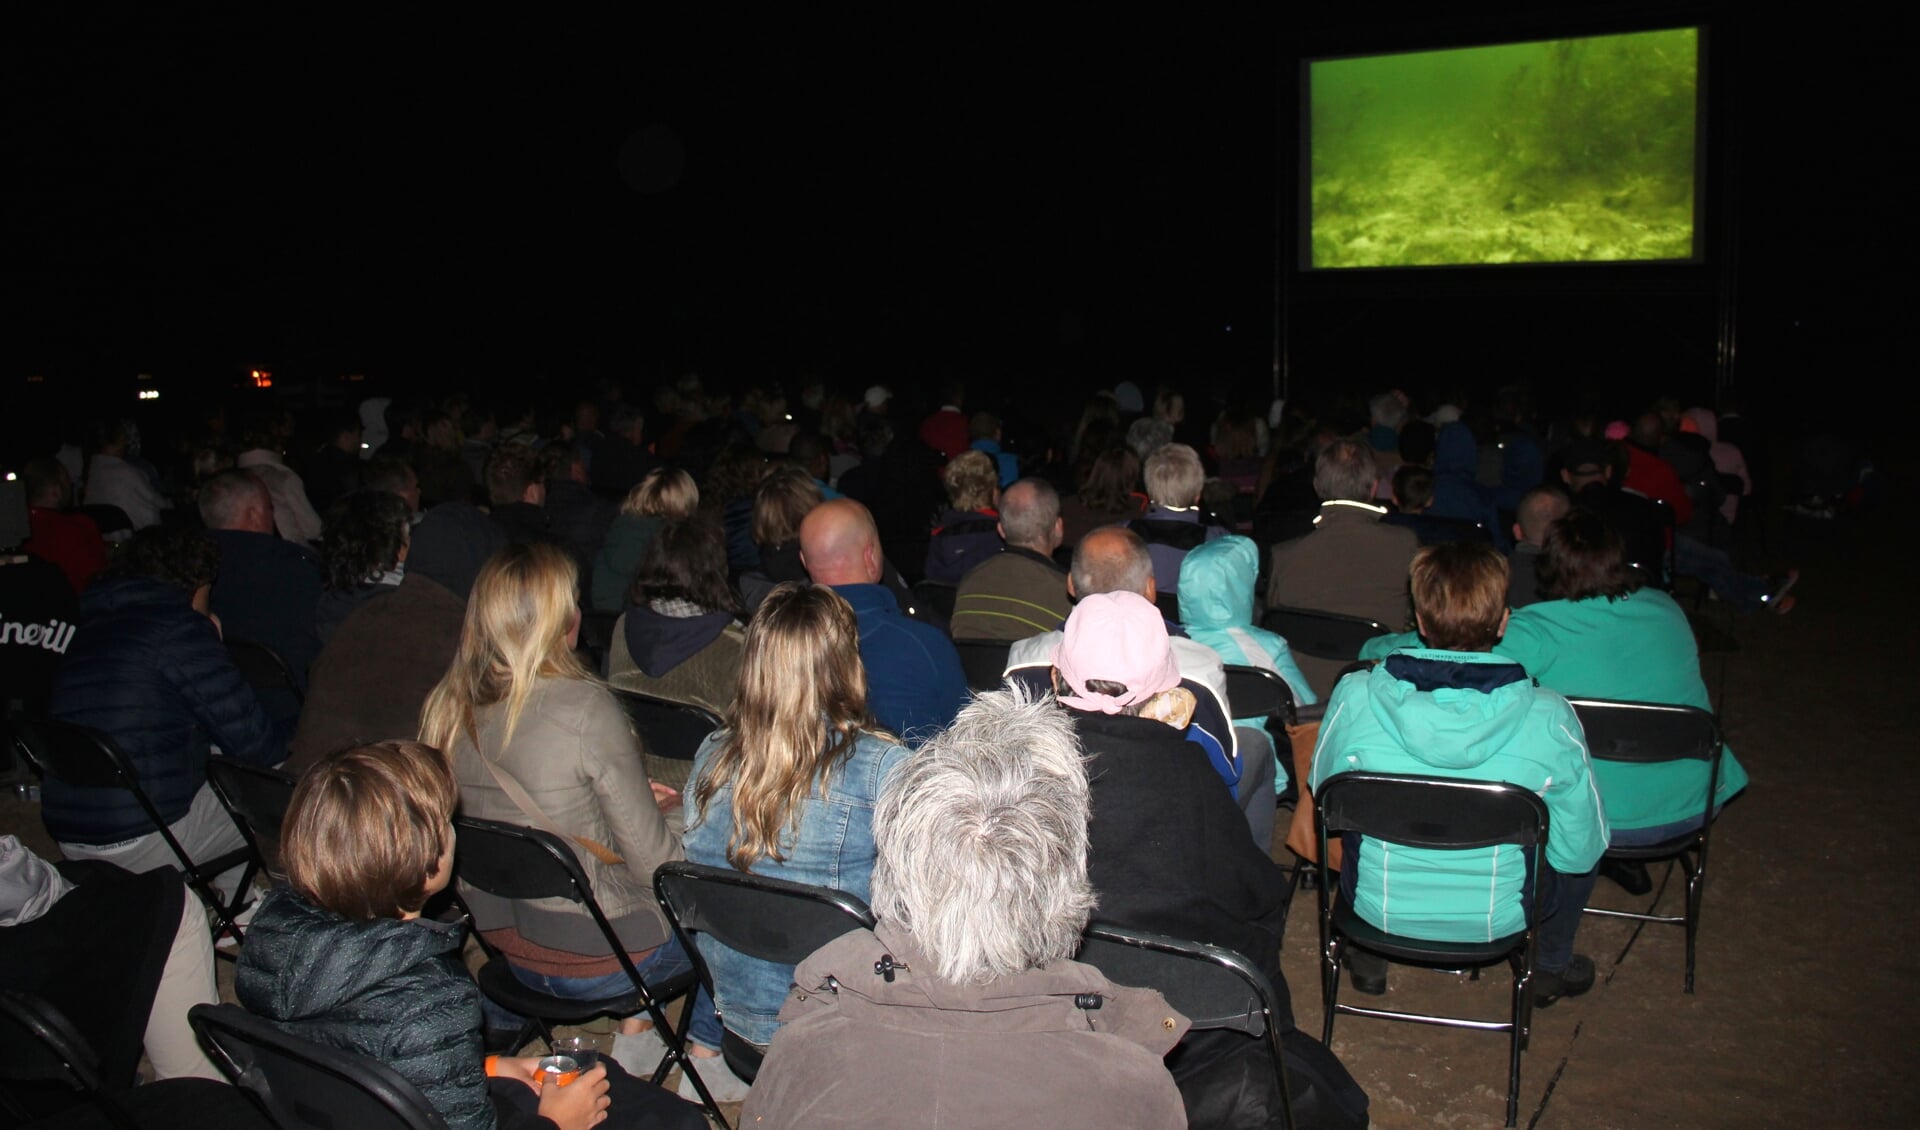 Op het donkere strand zagen zo'n 250 mensen zaterdag de film. (foto en tekst: Erik van Leeuwen)